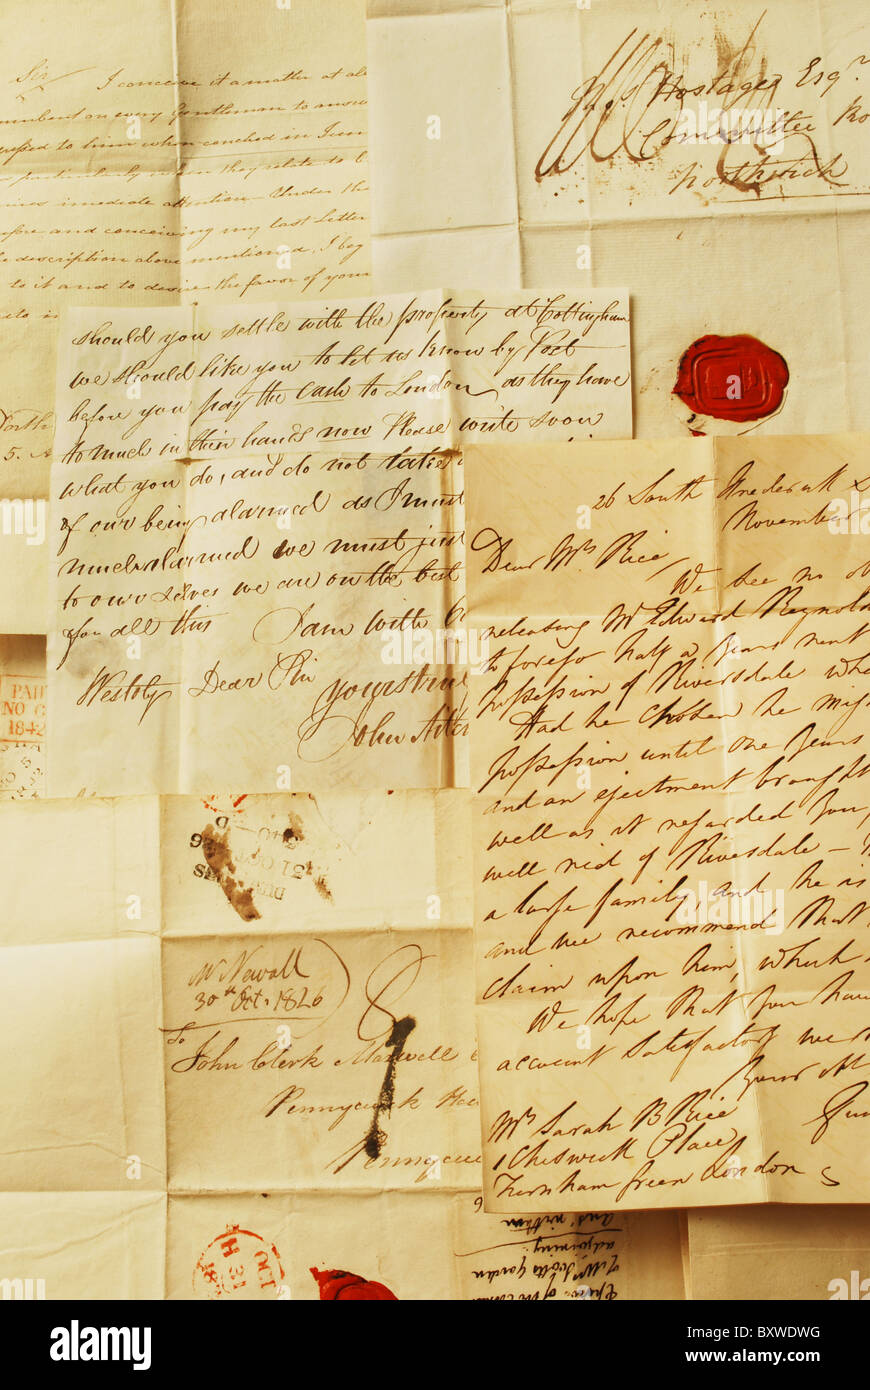 Vecchie Lettere Elegante Scrittura A Mano Lettere Del 1800 Esempio Di Sfondo Di Scrittura A Mano Foto Stock Alamy